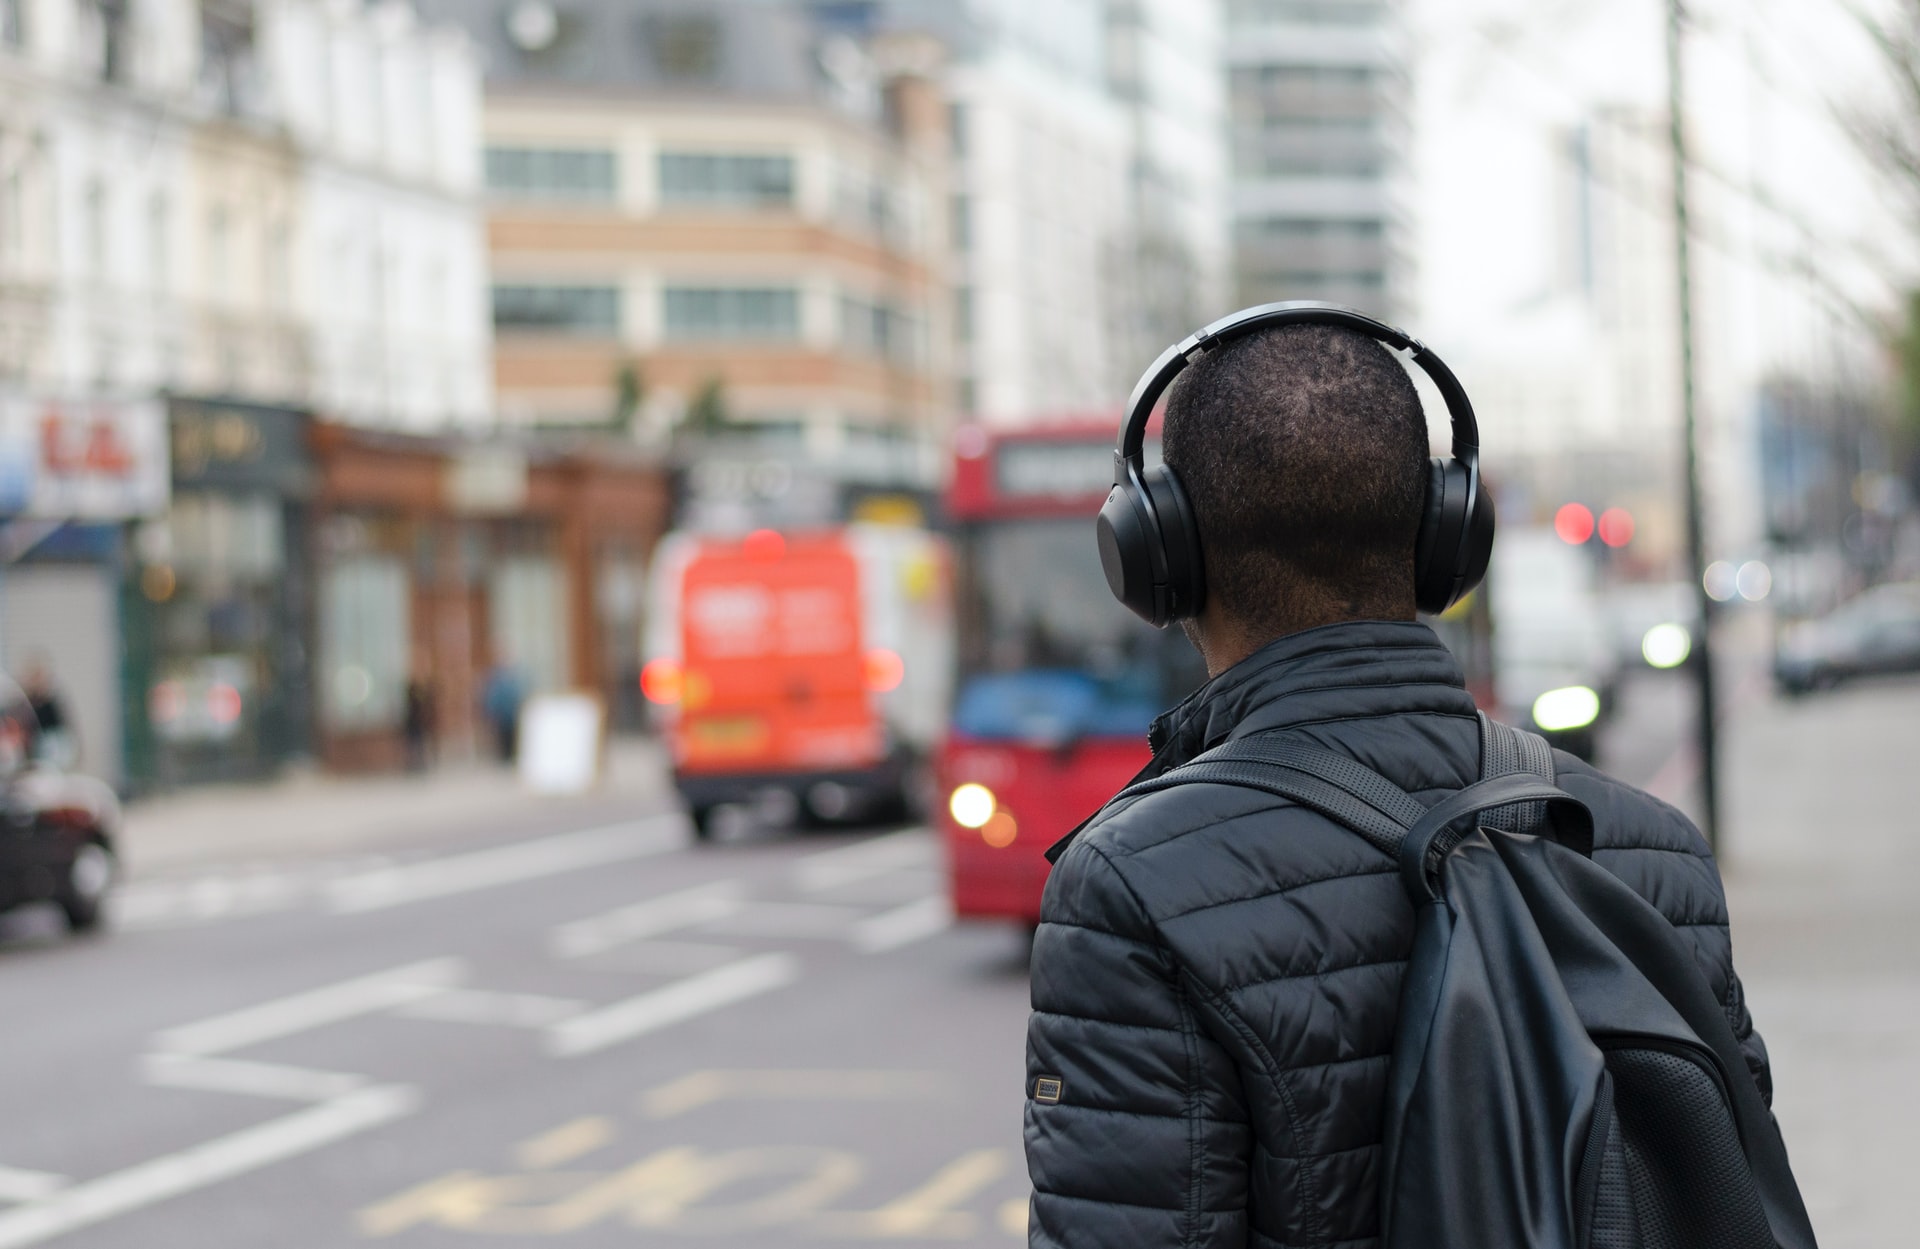 Japanisch Hören im Alltag. Mann nutzt Kopfhörer um unterwegs Japanisch zu hören